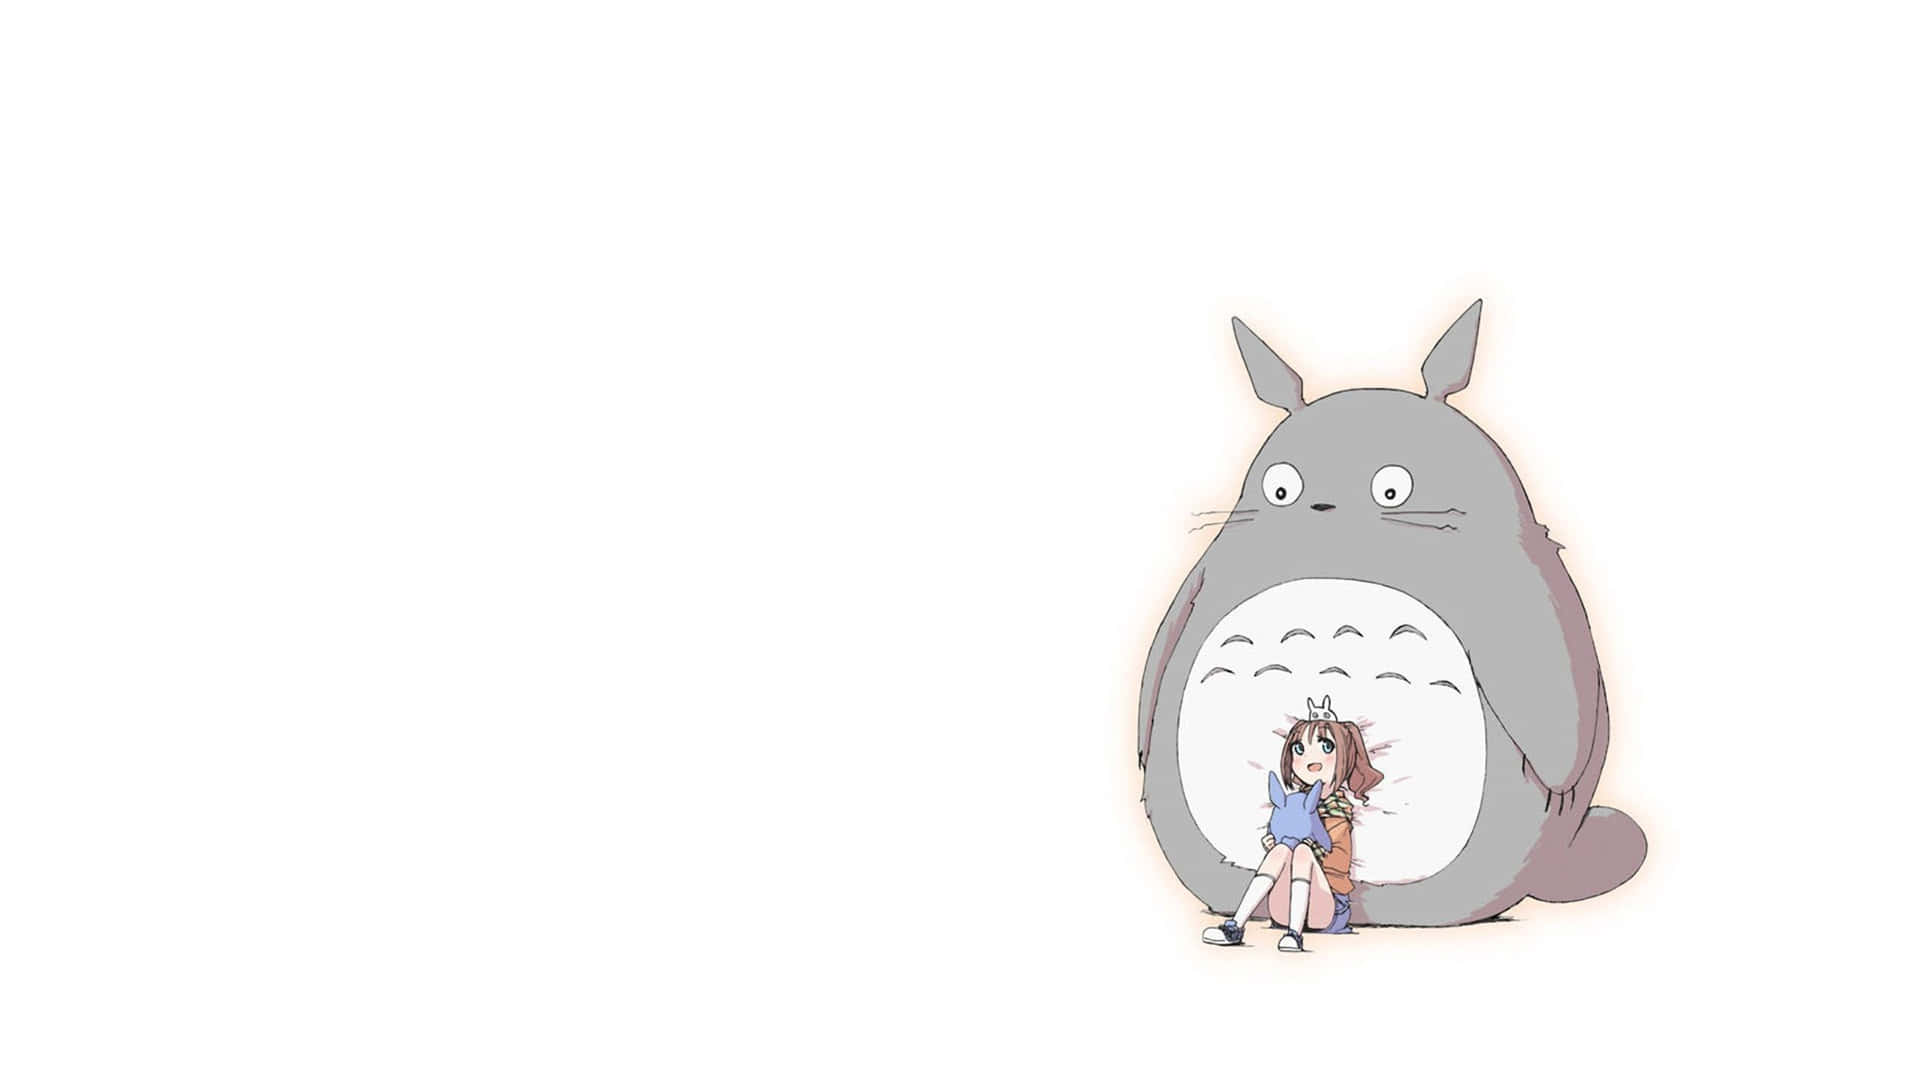 Sumérgeteen El Bosque Con Totoro